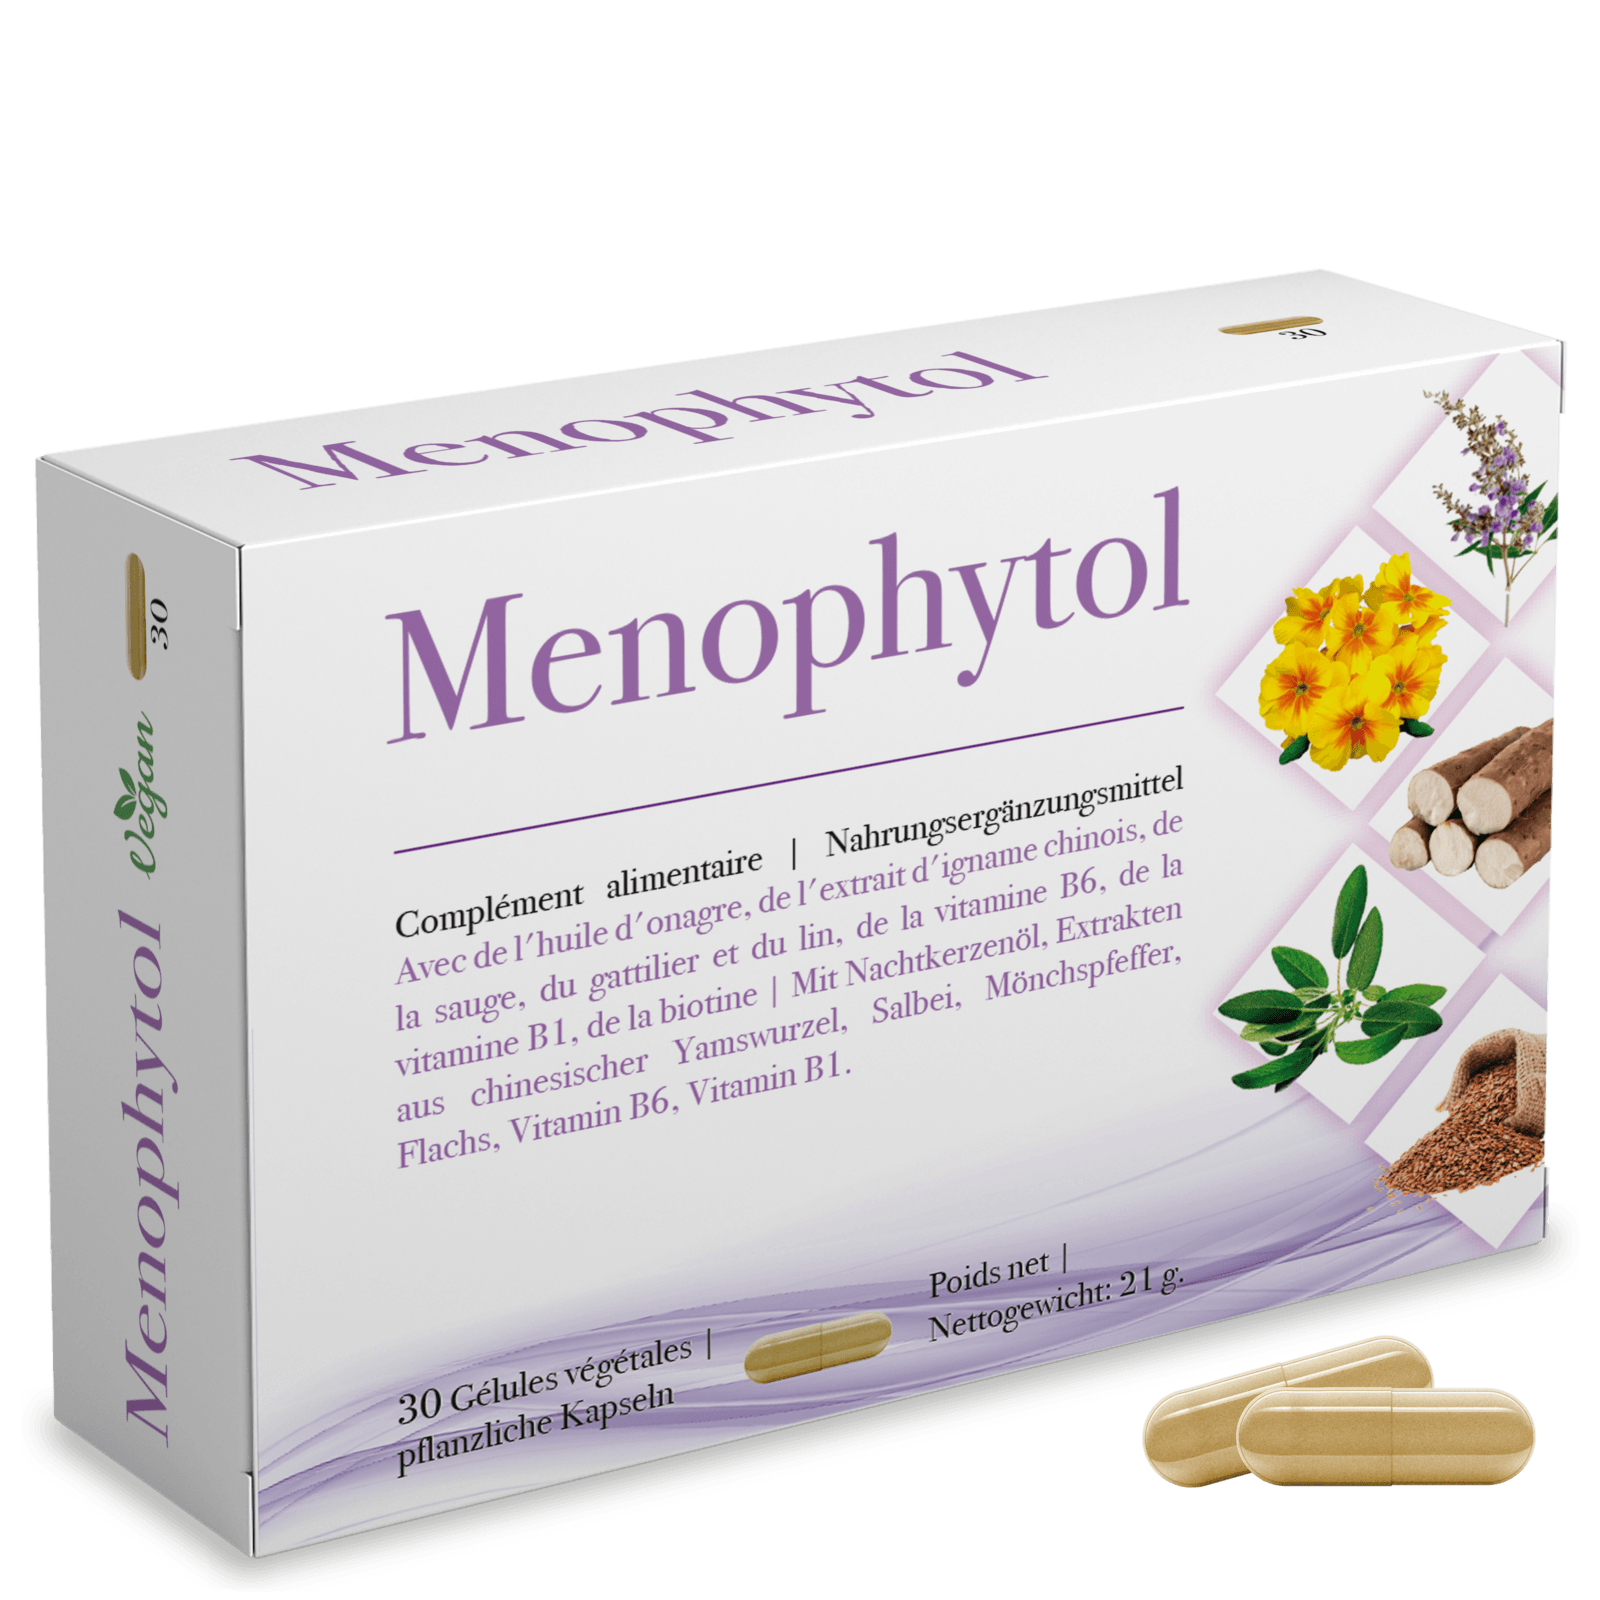 Menophytol Test, Wir recherchieren und berichten Ihnen von diesem Produkt